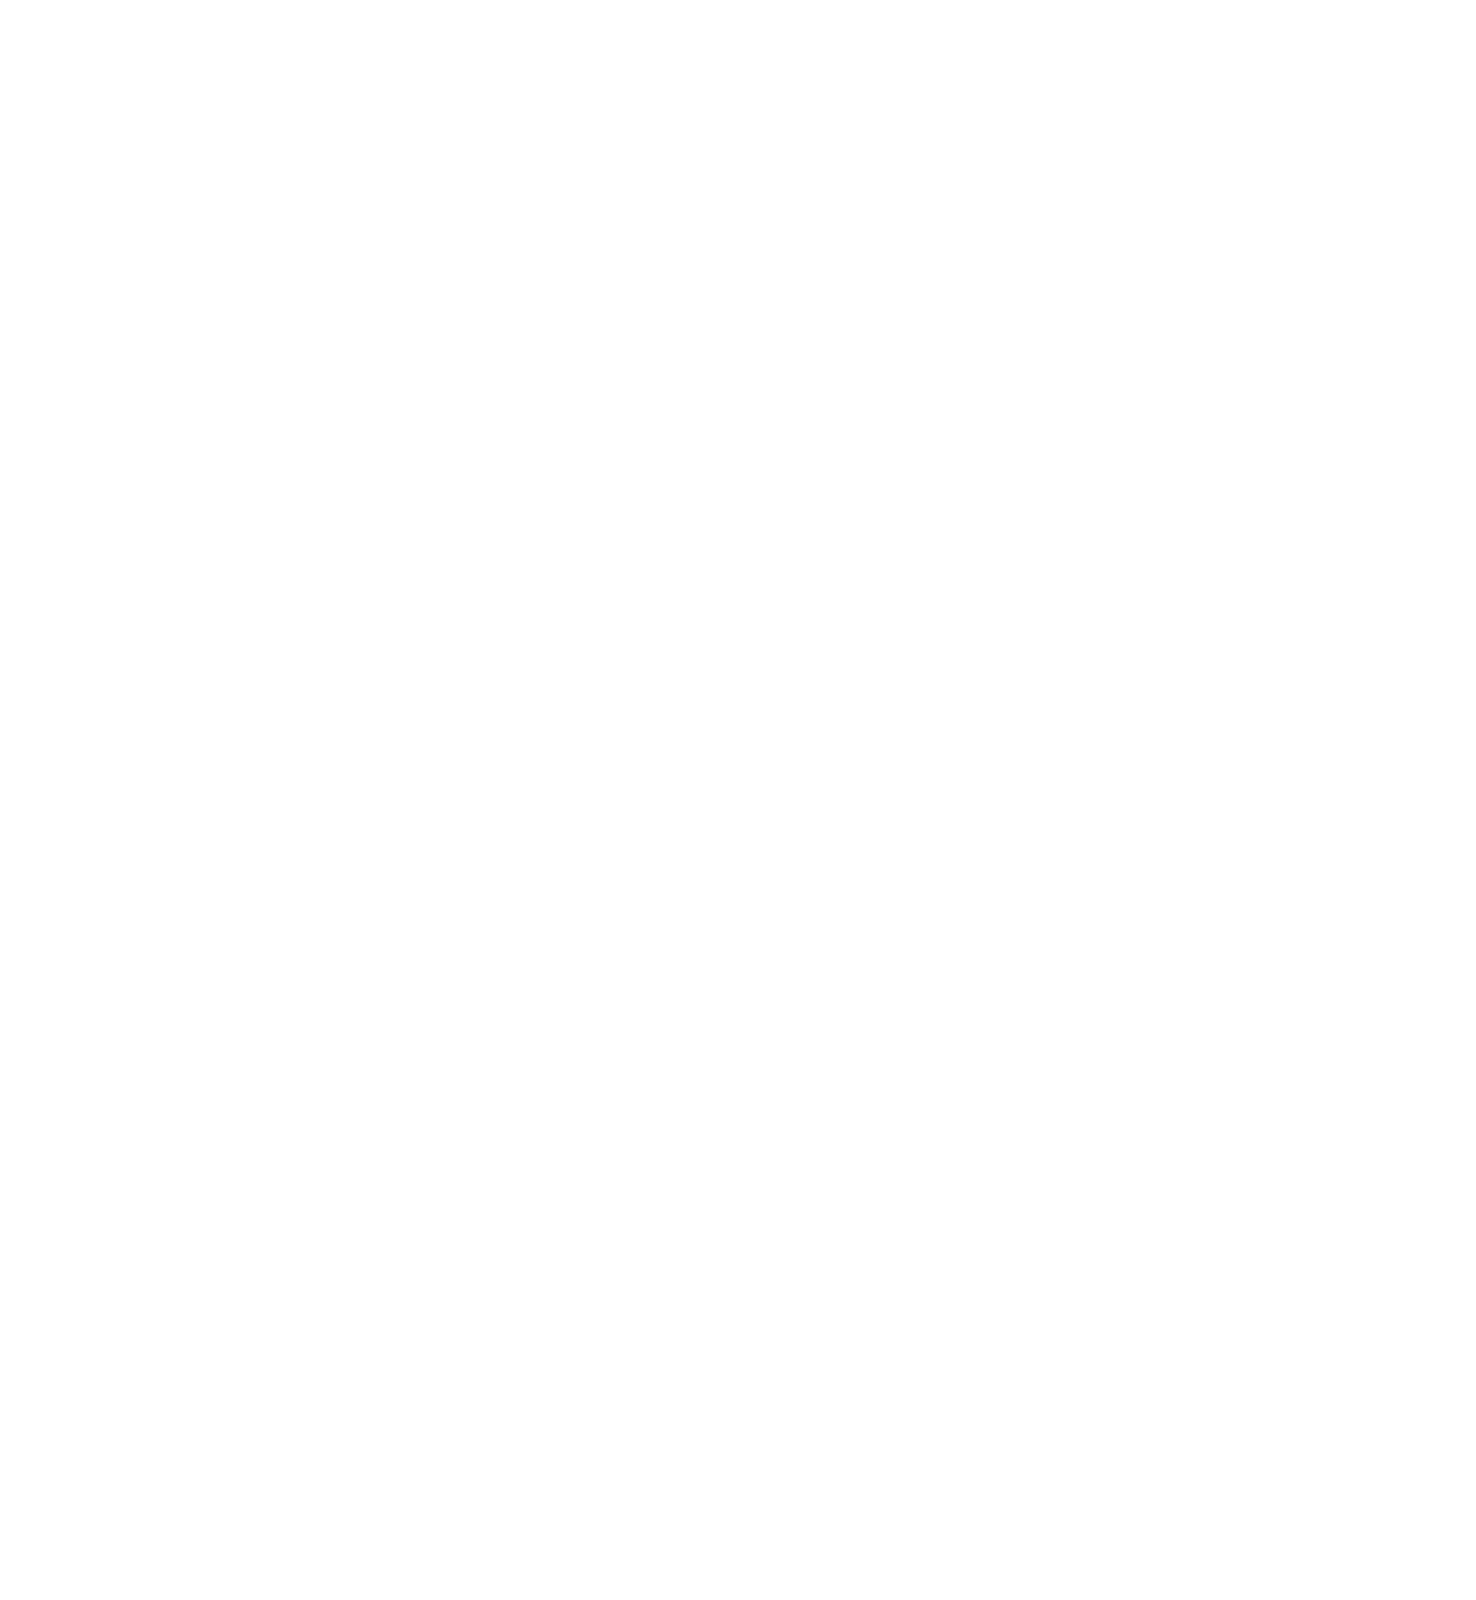 大橋トリオ、iTunes総合1位を獲得した最新アルバム収録曲「スノーマン」リリックビデオ公開サムネイル画像!